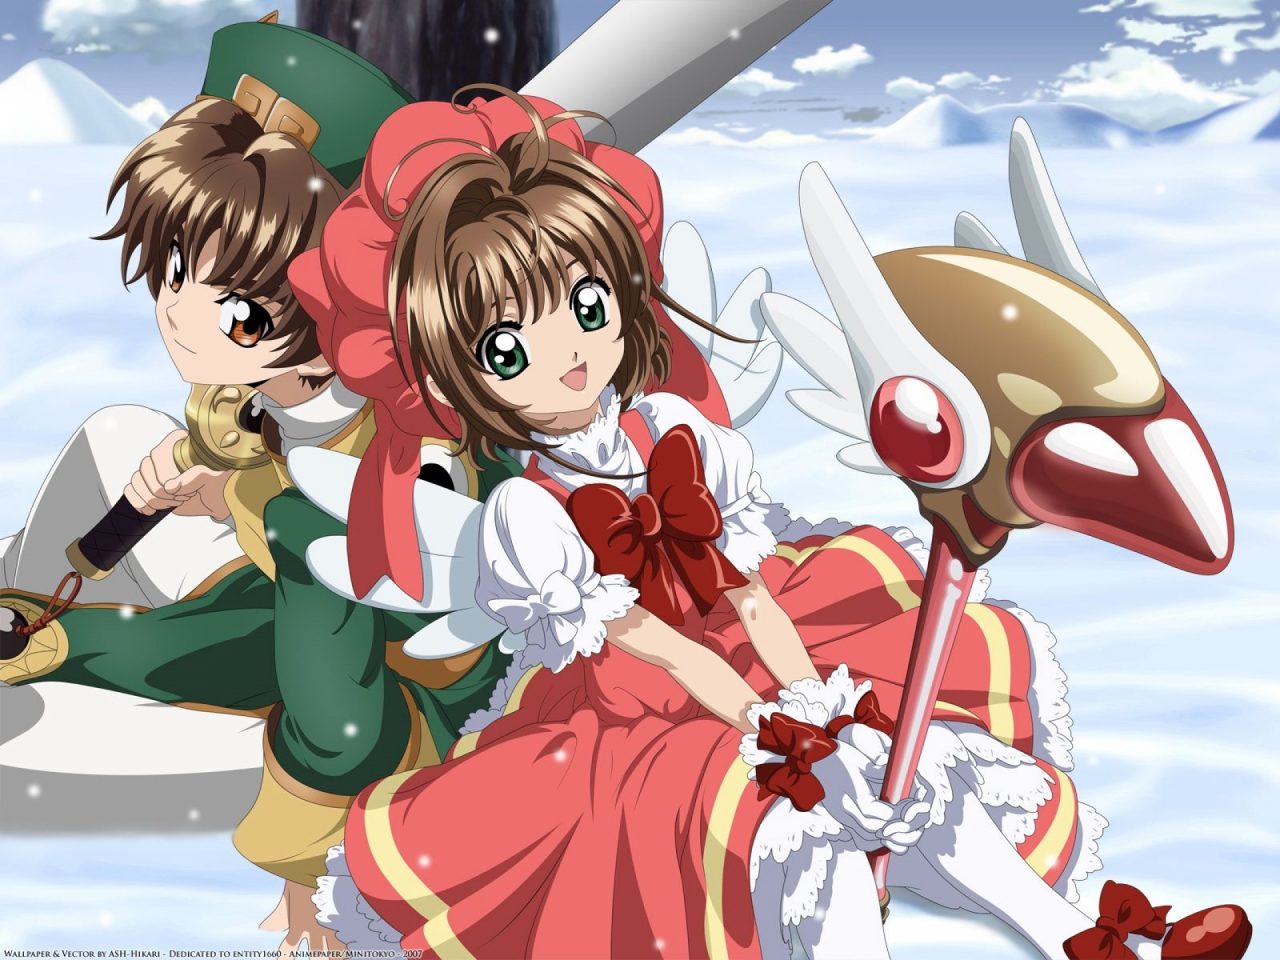 Café com Anime: “The Promised Neverland” episódios 1 e 2 – finisgeekis